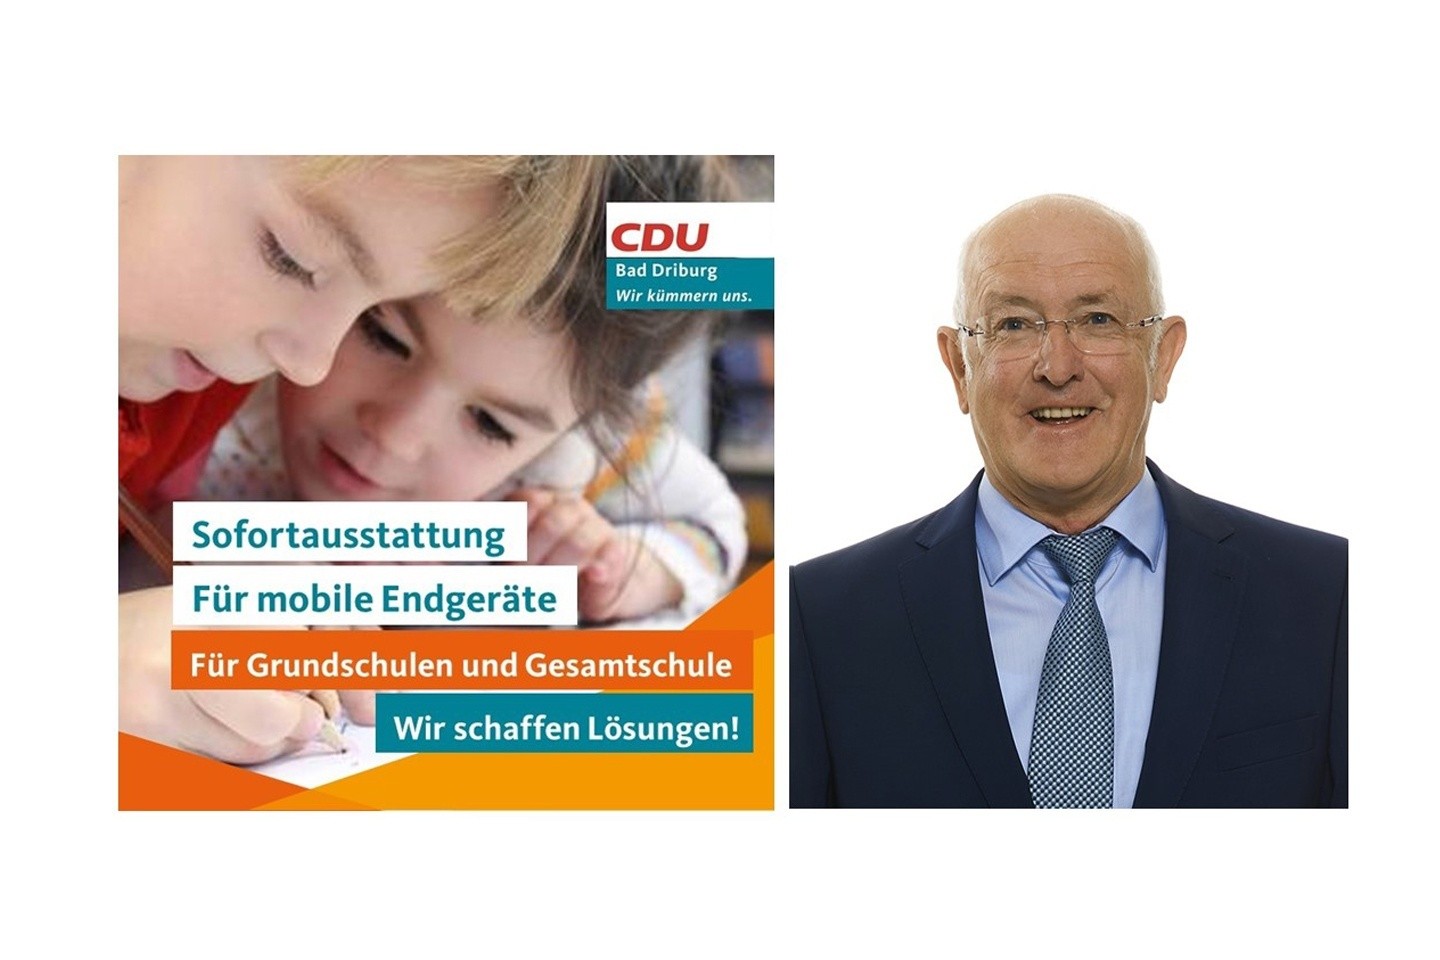 CDU kümmert sich! – Digitale Sofortausstattung für Schüler, Matthias Göke, Schulausschuss, Förderung, Digital, Kommunalwahl 2020,